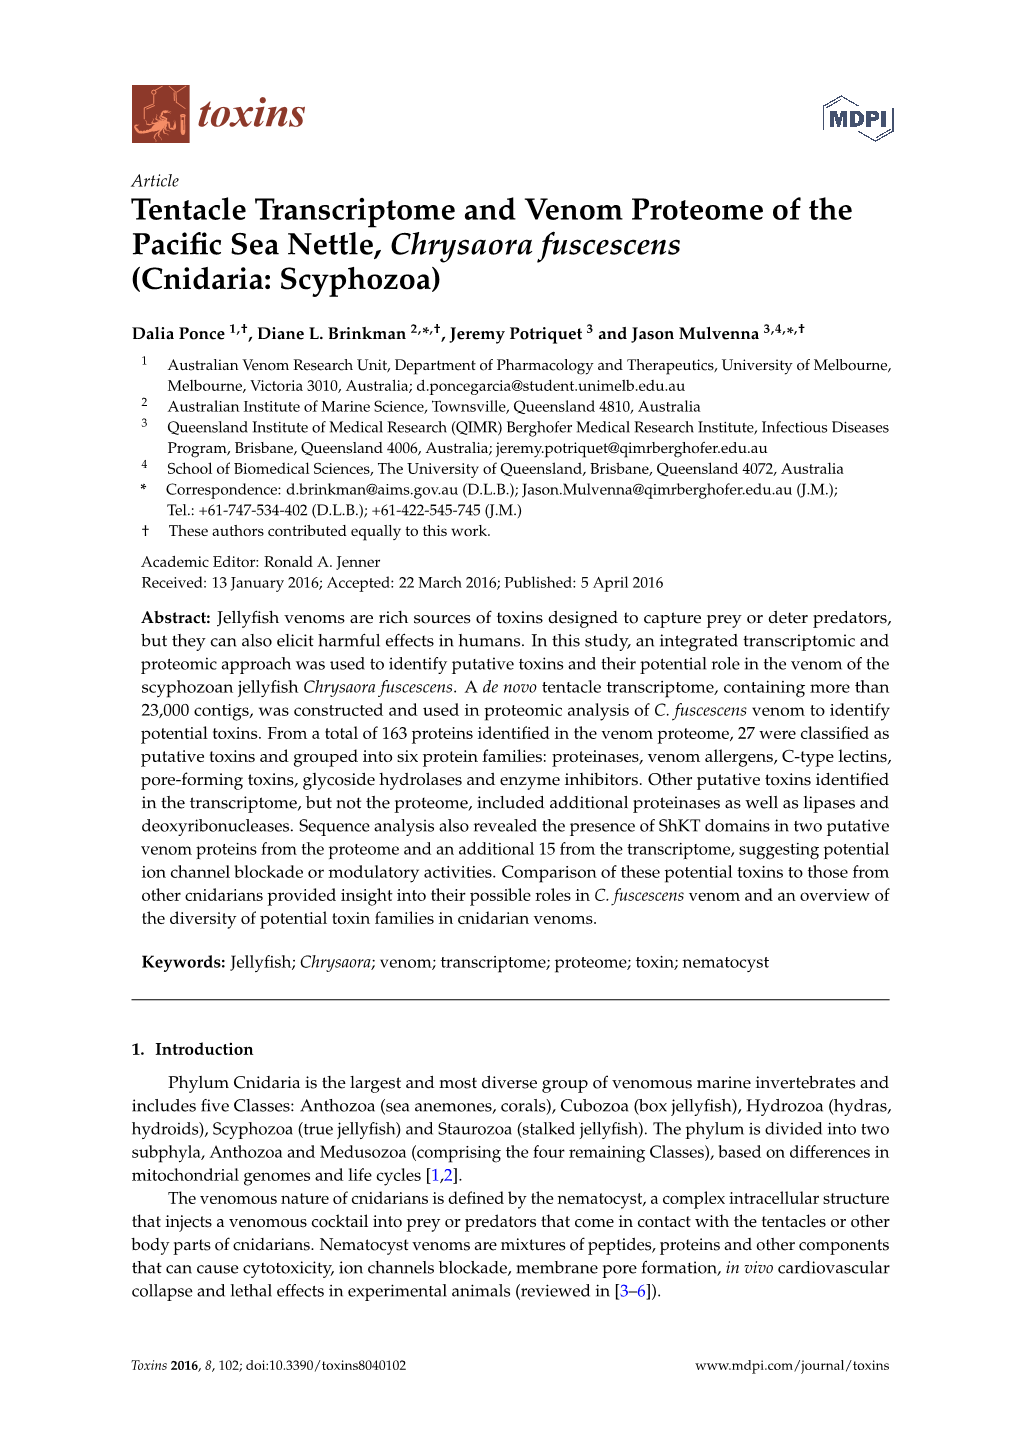 Tentacle Transcriptome and Venom Proteome of the Pacific Sea Nettle, Chrysaora Fuscescens (Cnidaria: Scyphozoa)